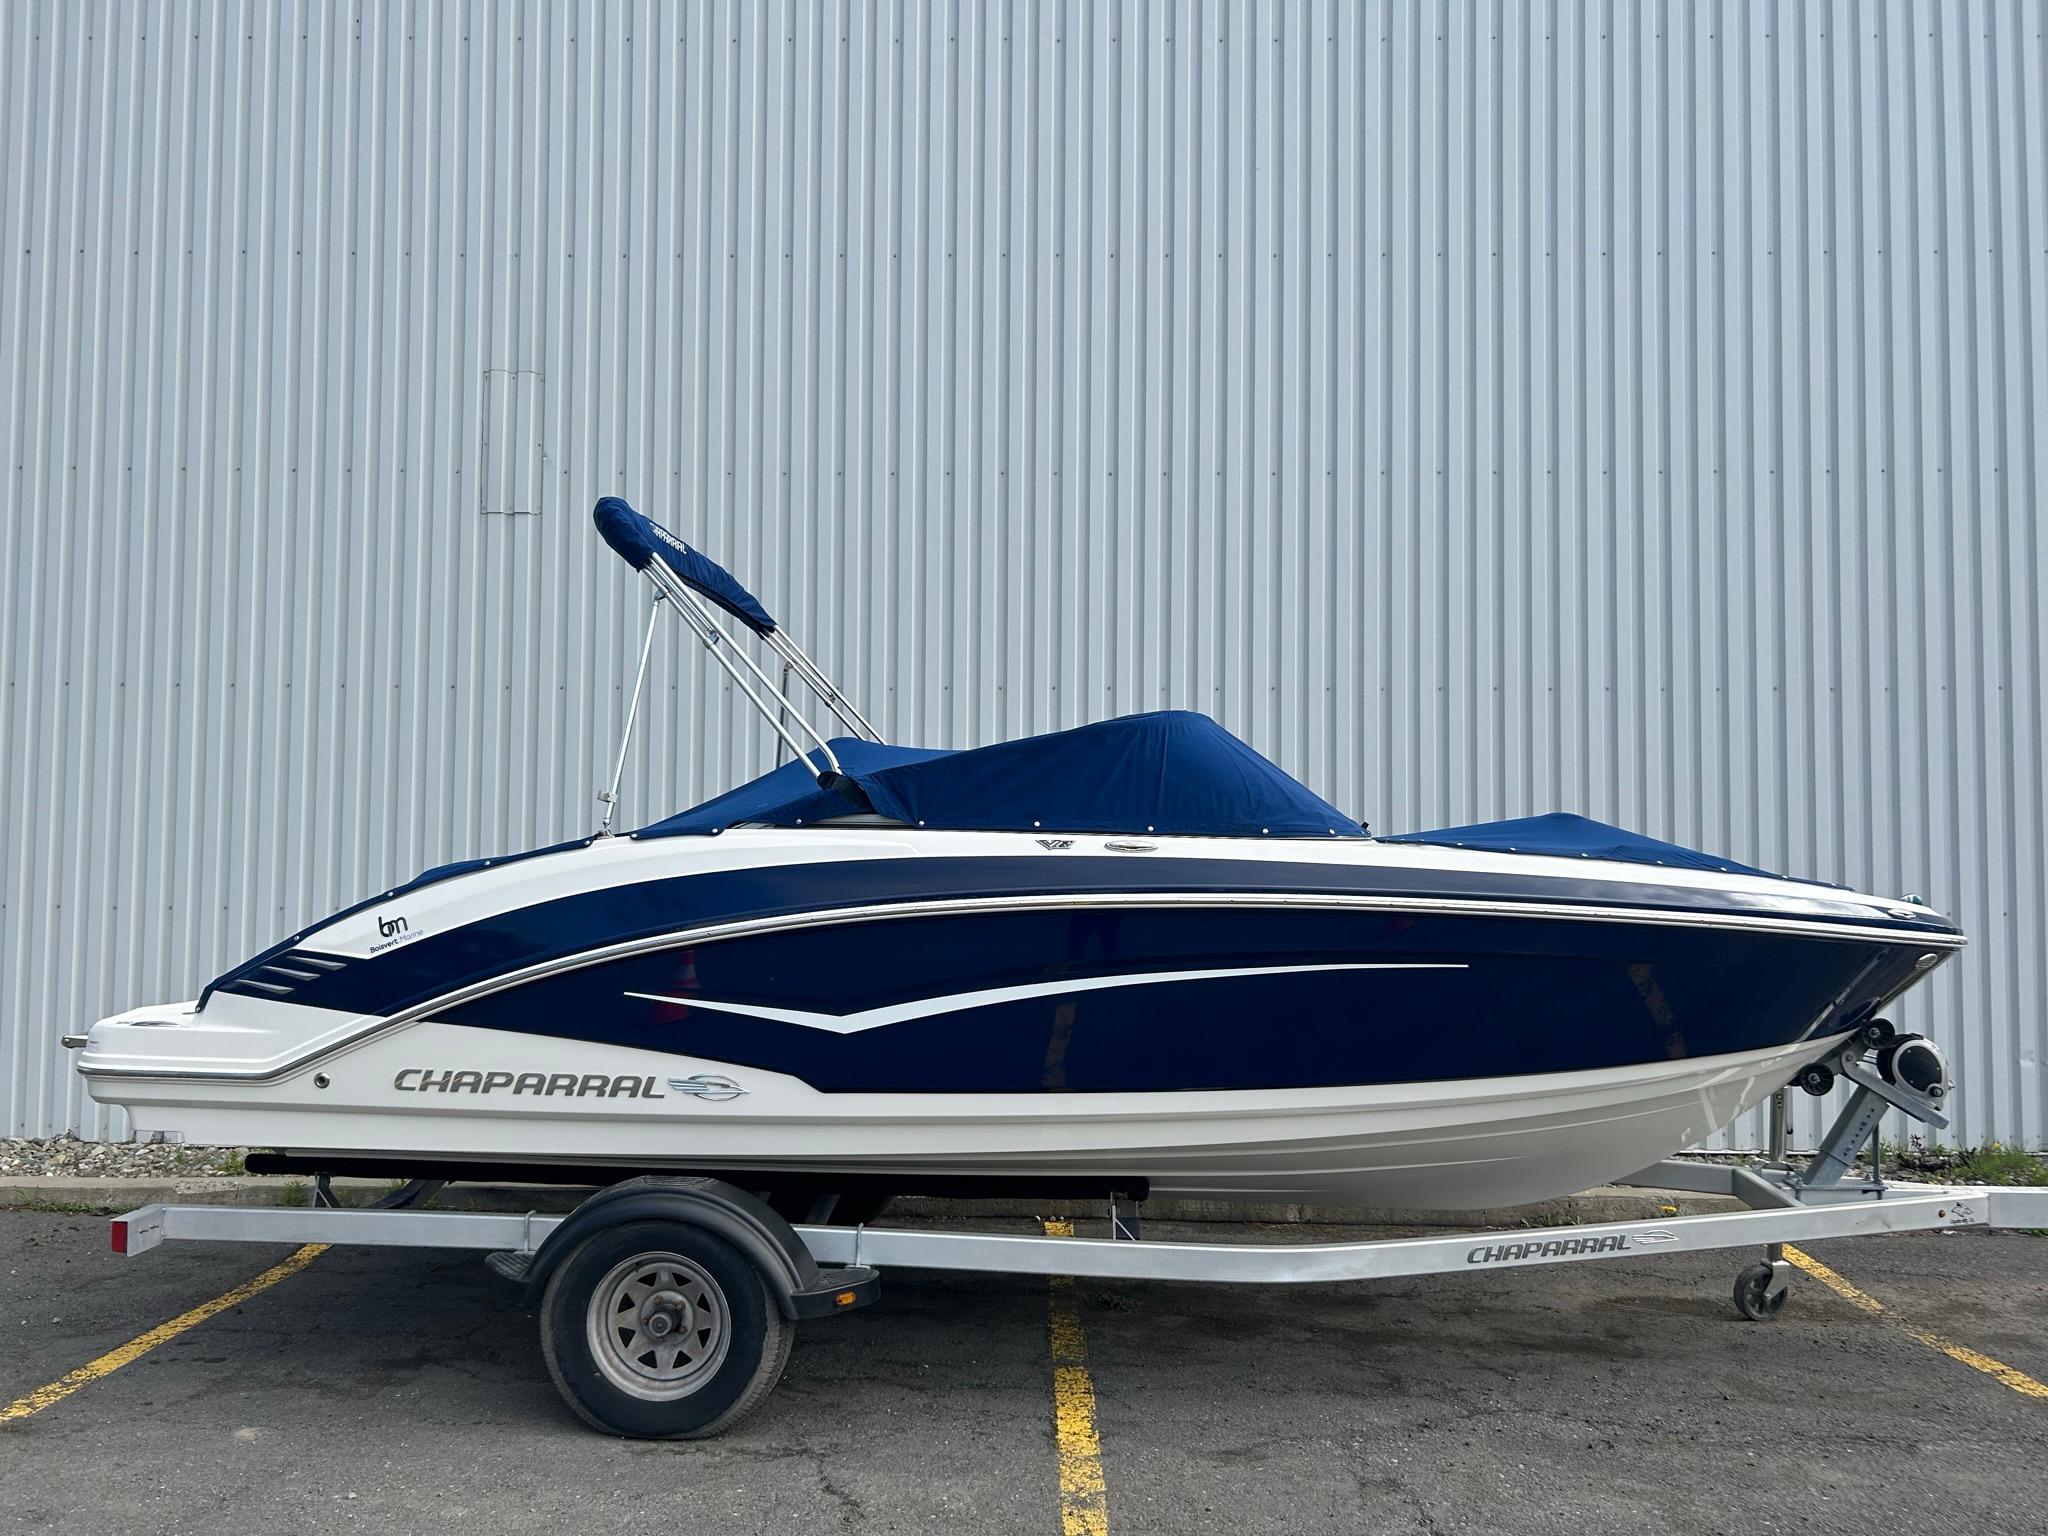 2016 Chaparral Vortex 203 VRX, Sorel-Tracy Canada - boats.com